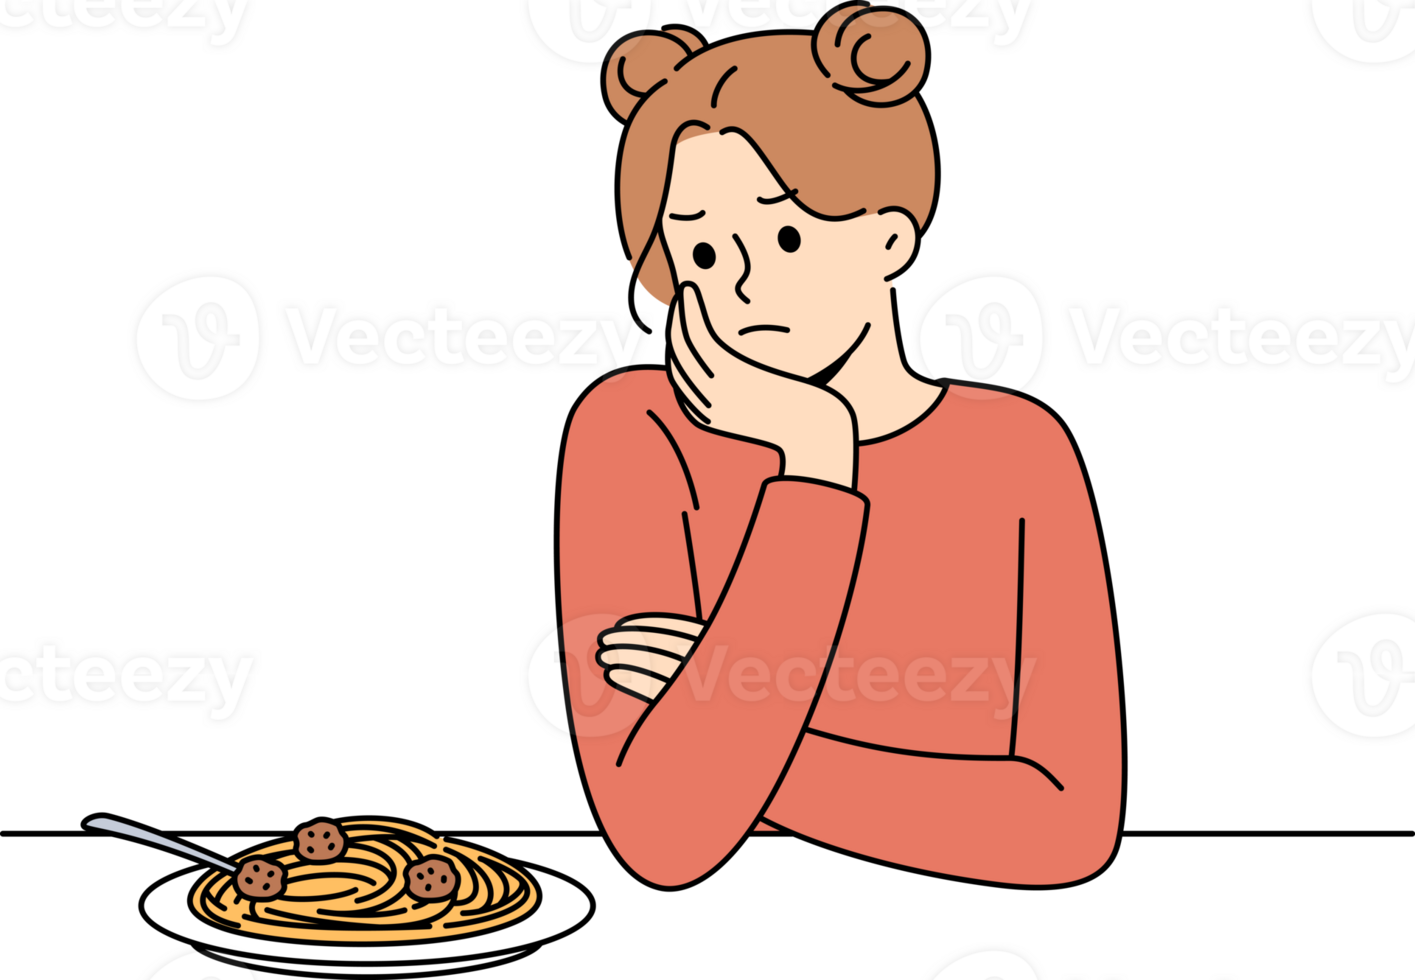 mujer experiencias carencia de apetito y tristemente mira a plato de espaguetis debido a psicológico problemas y bulimia. niña sufre desde pobre apetito causando digestivo trastornos y bulimia. png